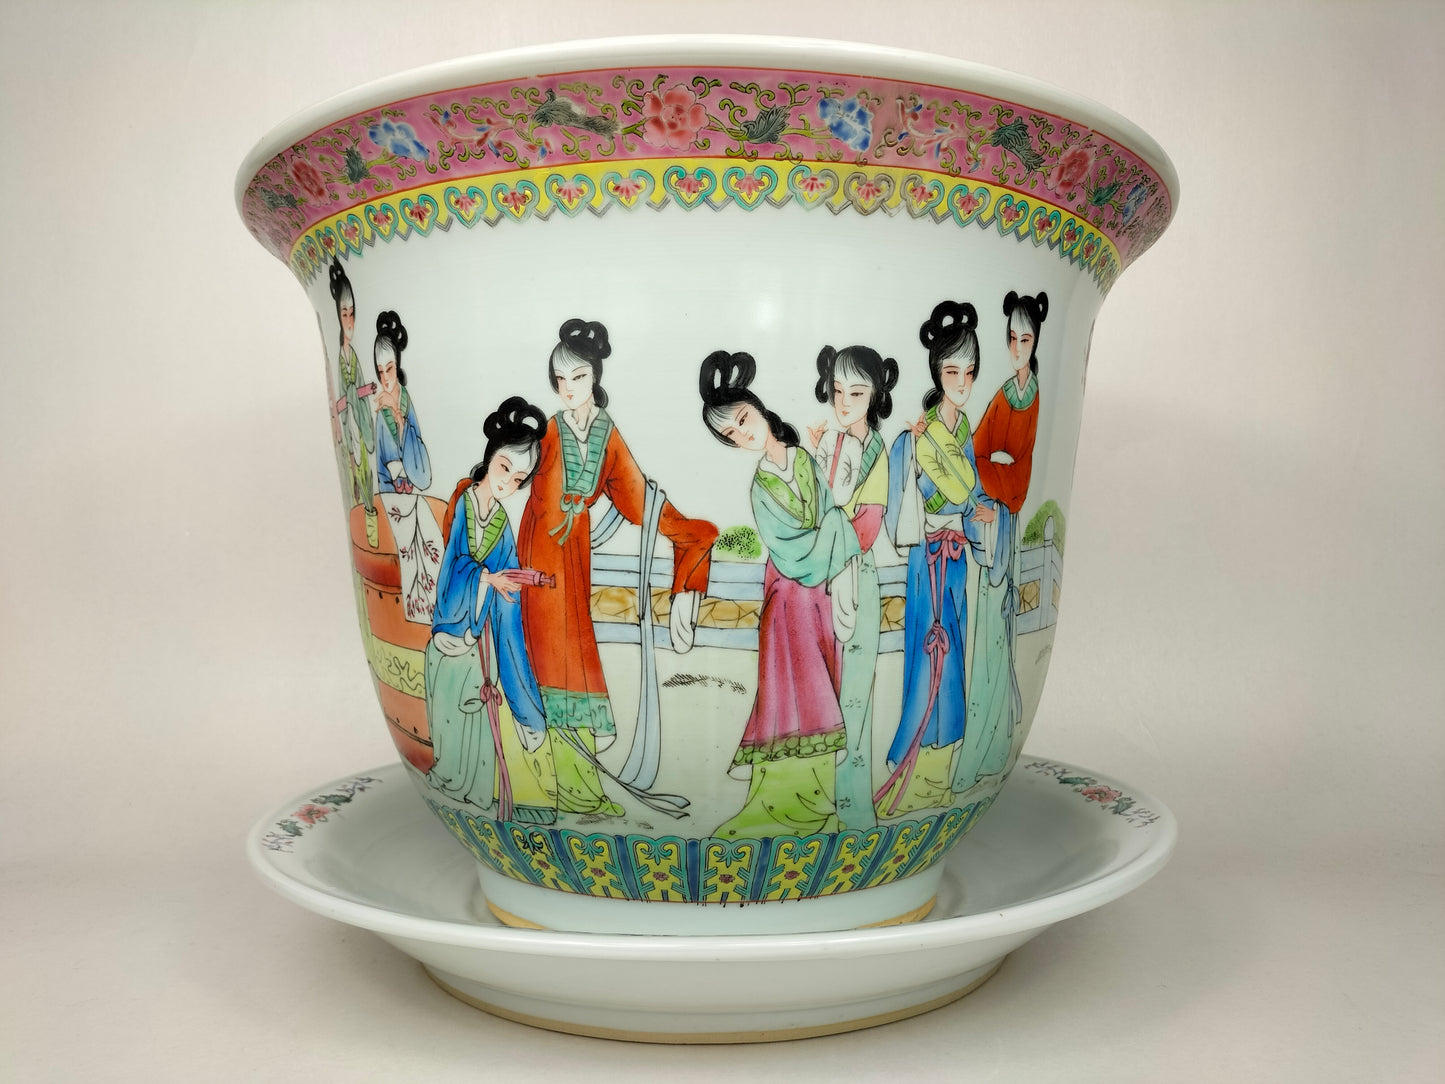 Chậu hoa hồng gia đình XL cực lớn được trang trí hình phụ nữ Trung Quốc // thế kỷ 20